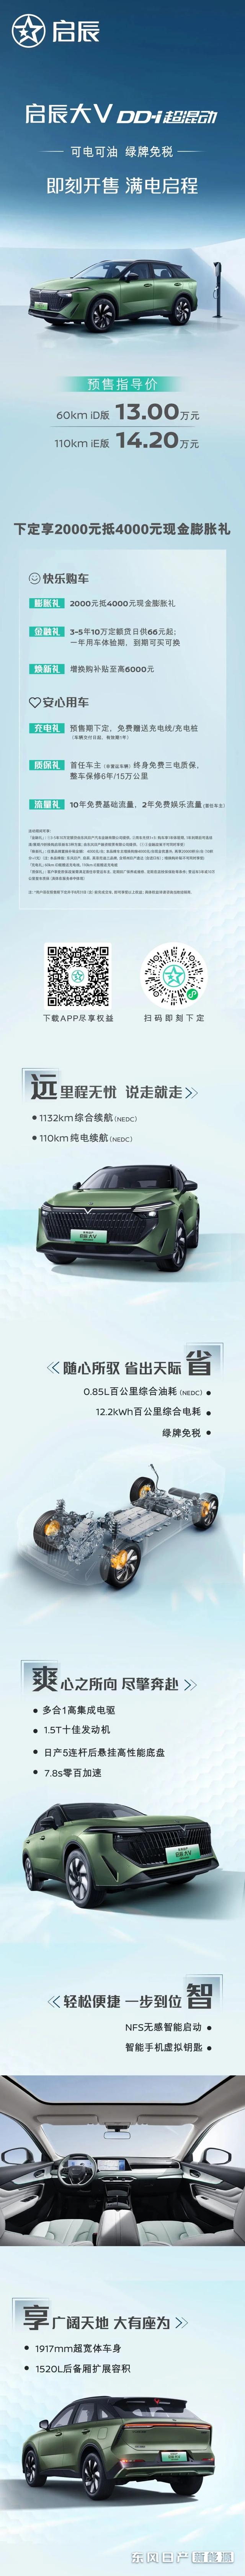 春风日产首款插混新能源车型启辰大V DD-i将于7月8日上市